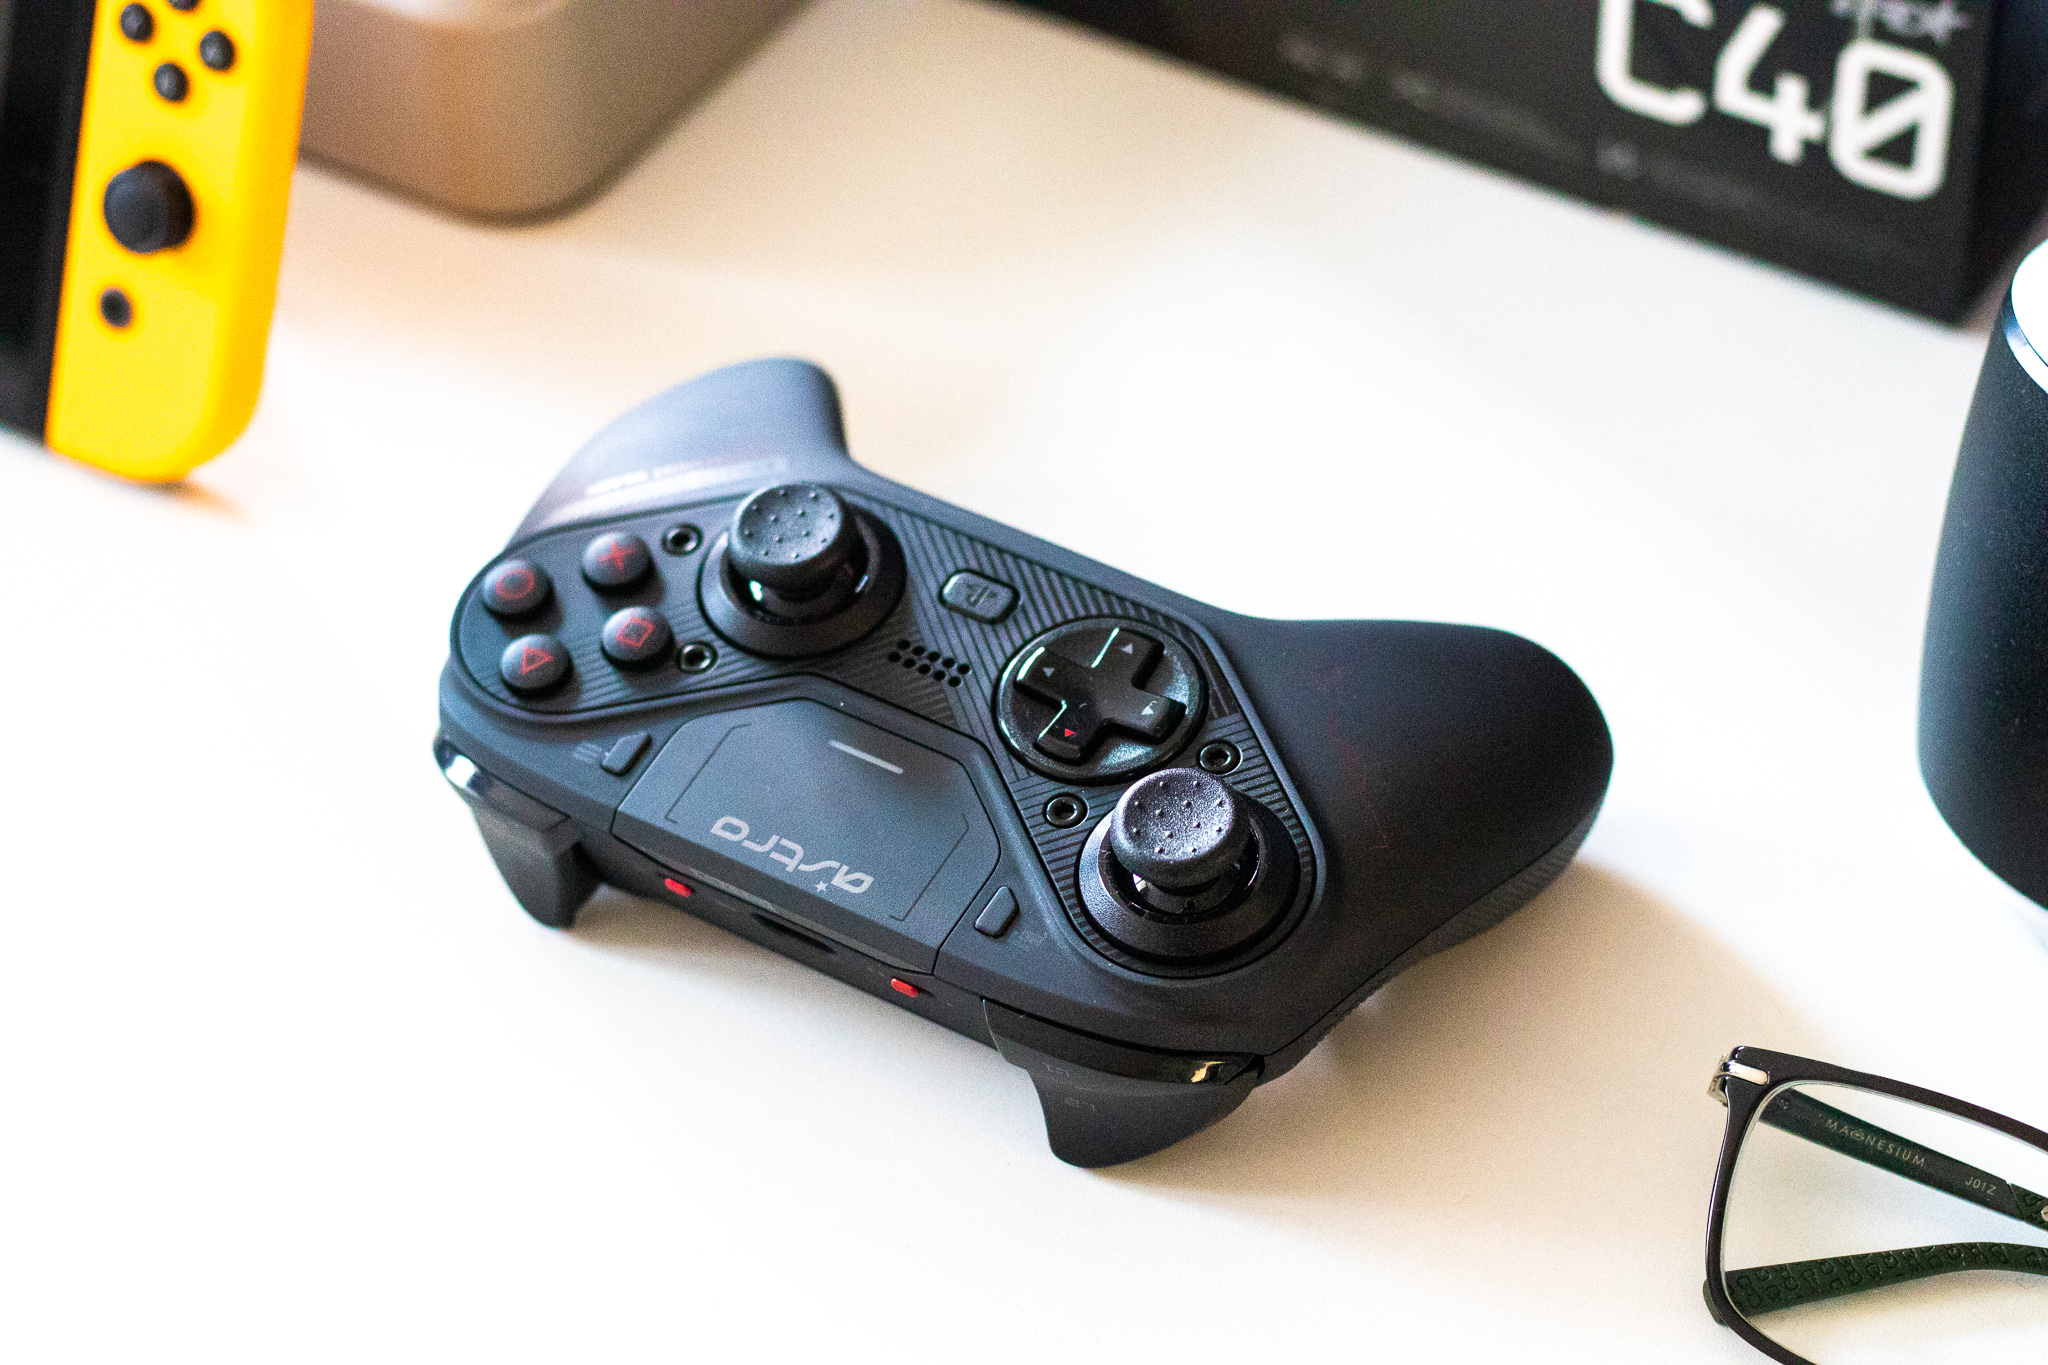 Pengaturan analog dari PlayStation atau Xbox? Kontroler Astro C40 TR menawarkan kedua pengaturan ini - tinjauan